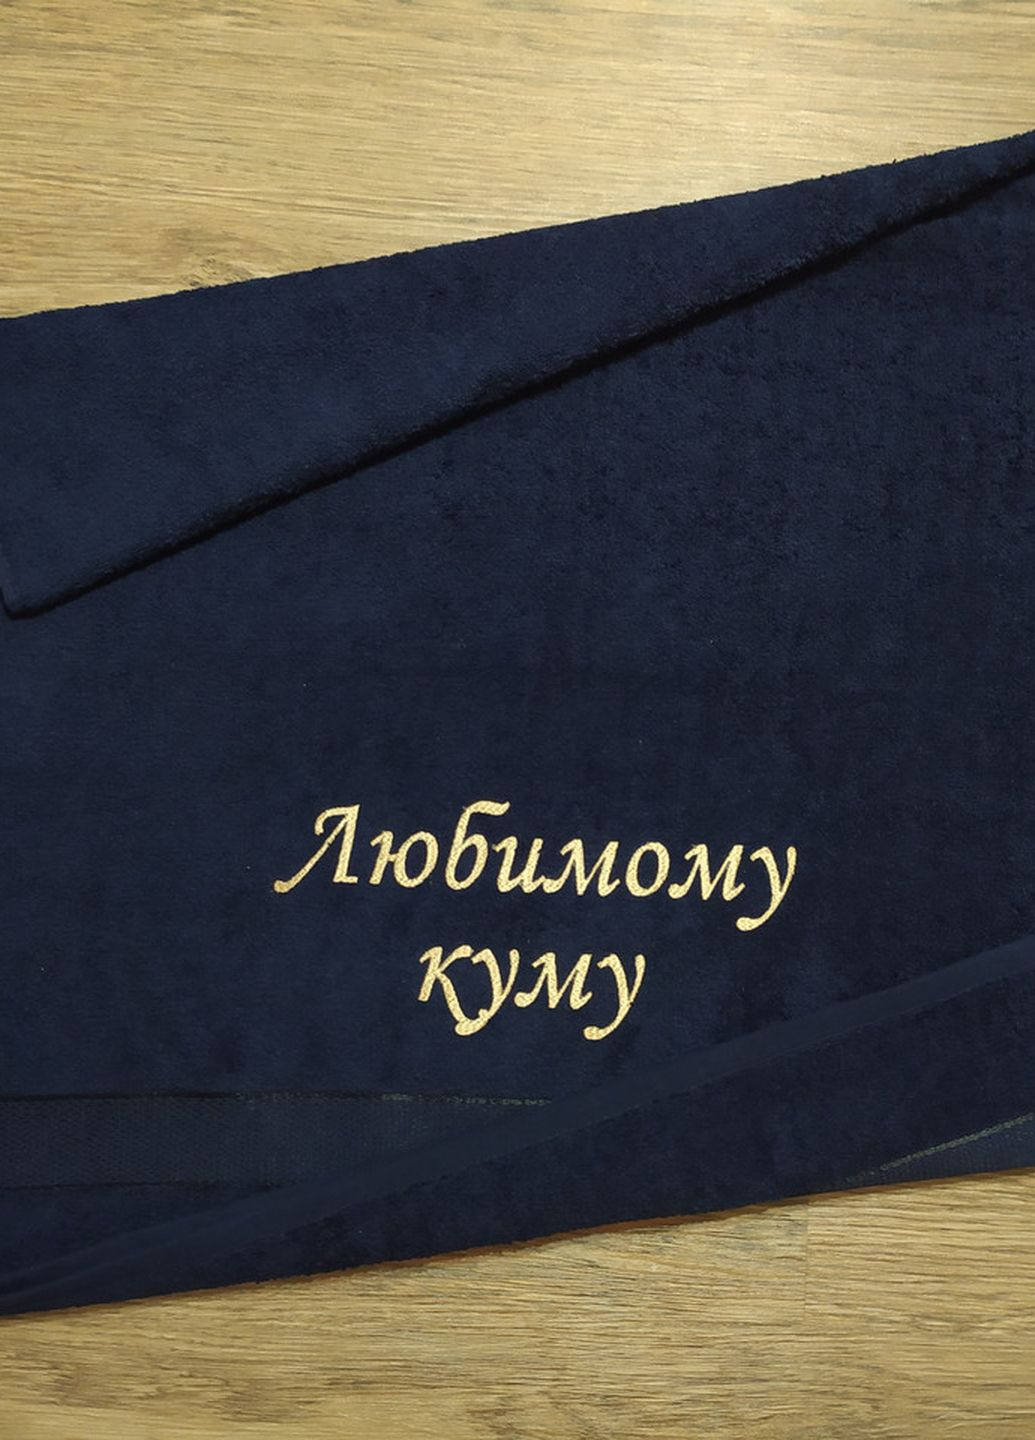 No Brand полотенце с вышивкой махровое банное 70*140 темно-синий крестному папе куму 00098 однотонный темно-синий производство - Украина